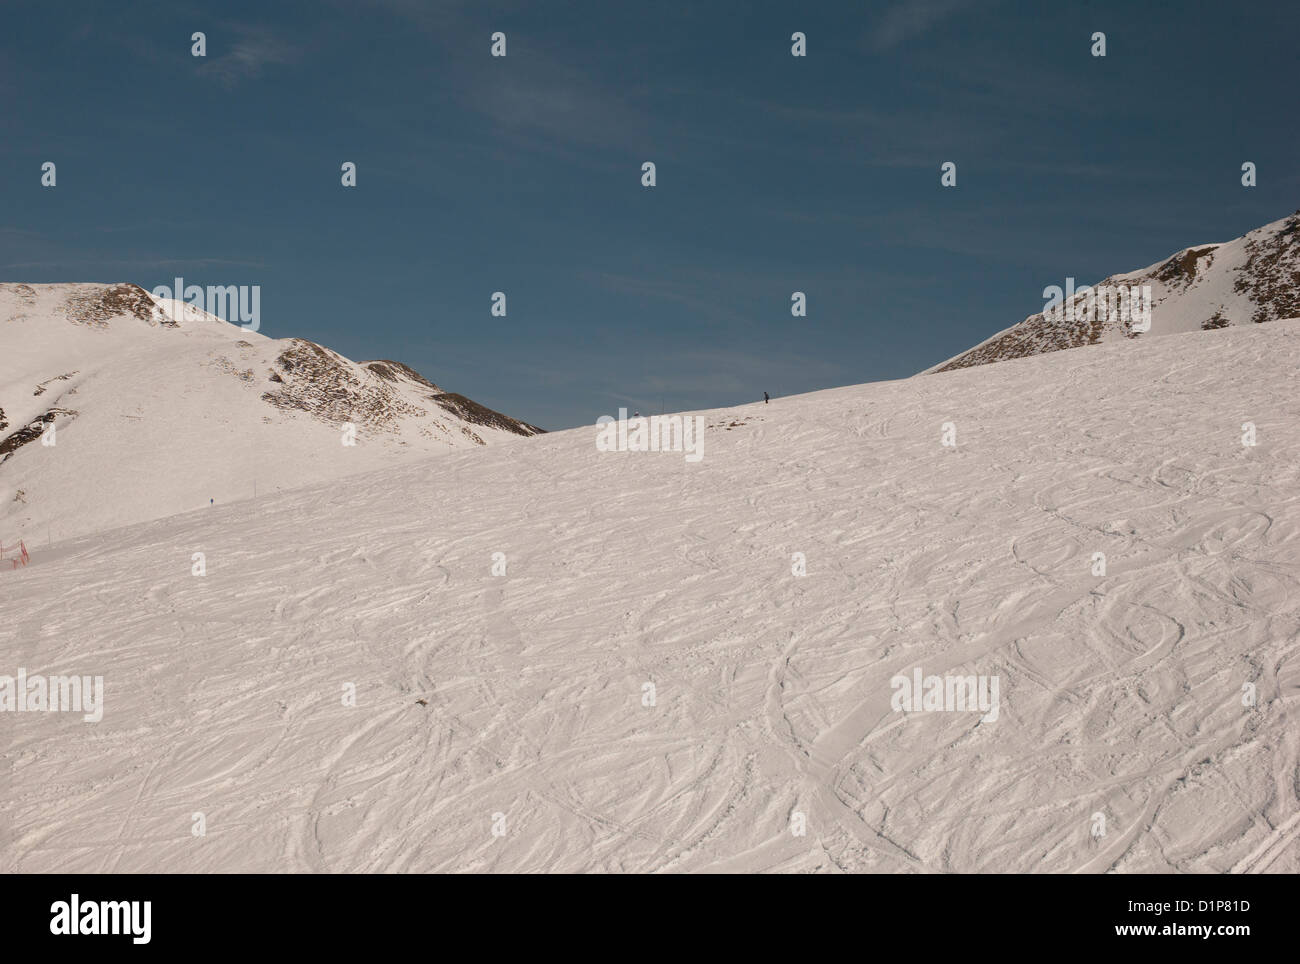 Domaine skiable couvert de neige en hiver, le Domaine de Balme, Vallorcine, Mont Blanc, Chamonix, Rhône-Alpes, France Banque D'Images